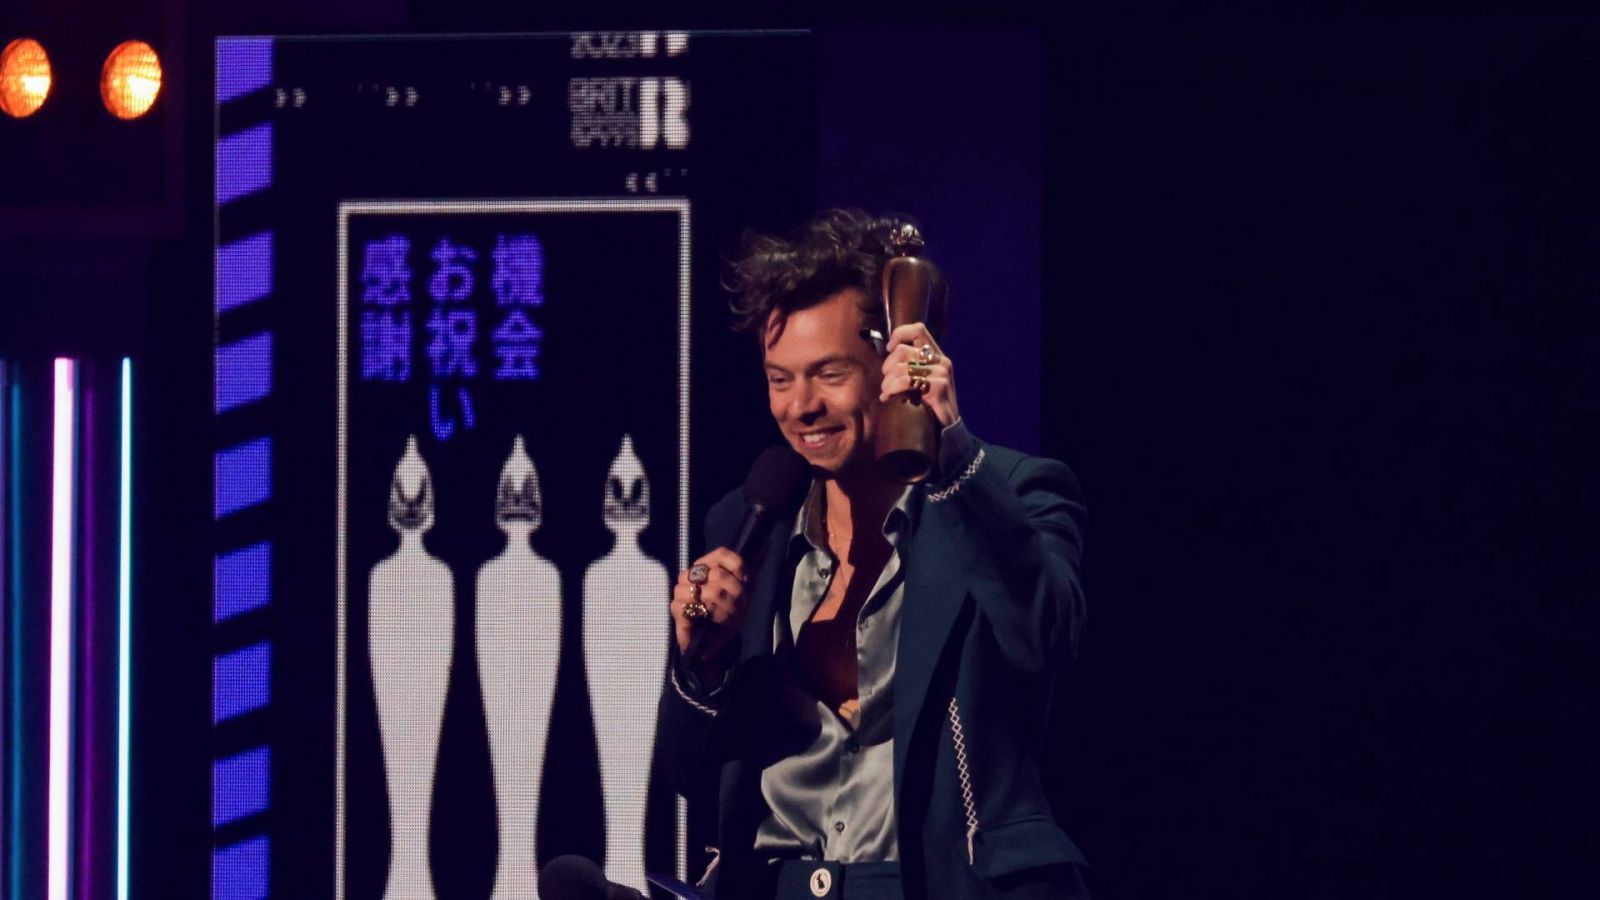 Una imagen del cantante Harry Styles tras ganar el premio Brit Awards a mejor álbum.